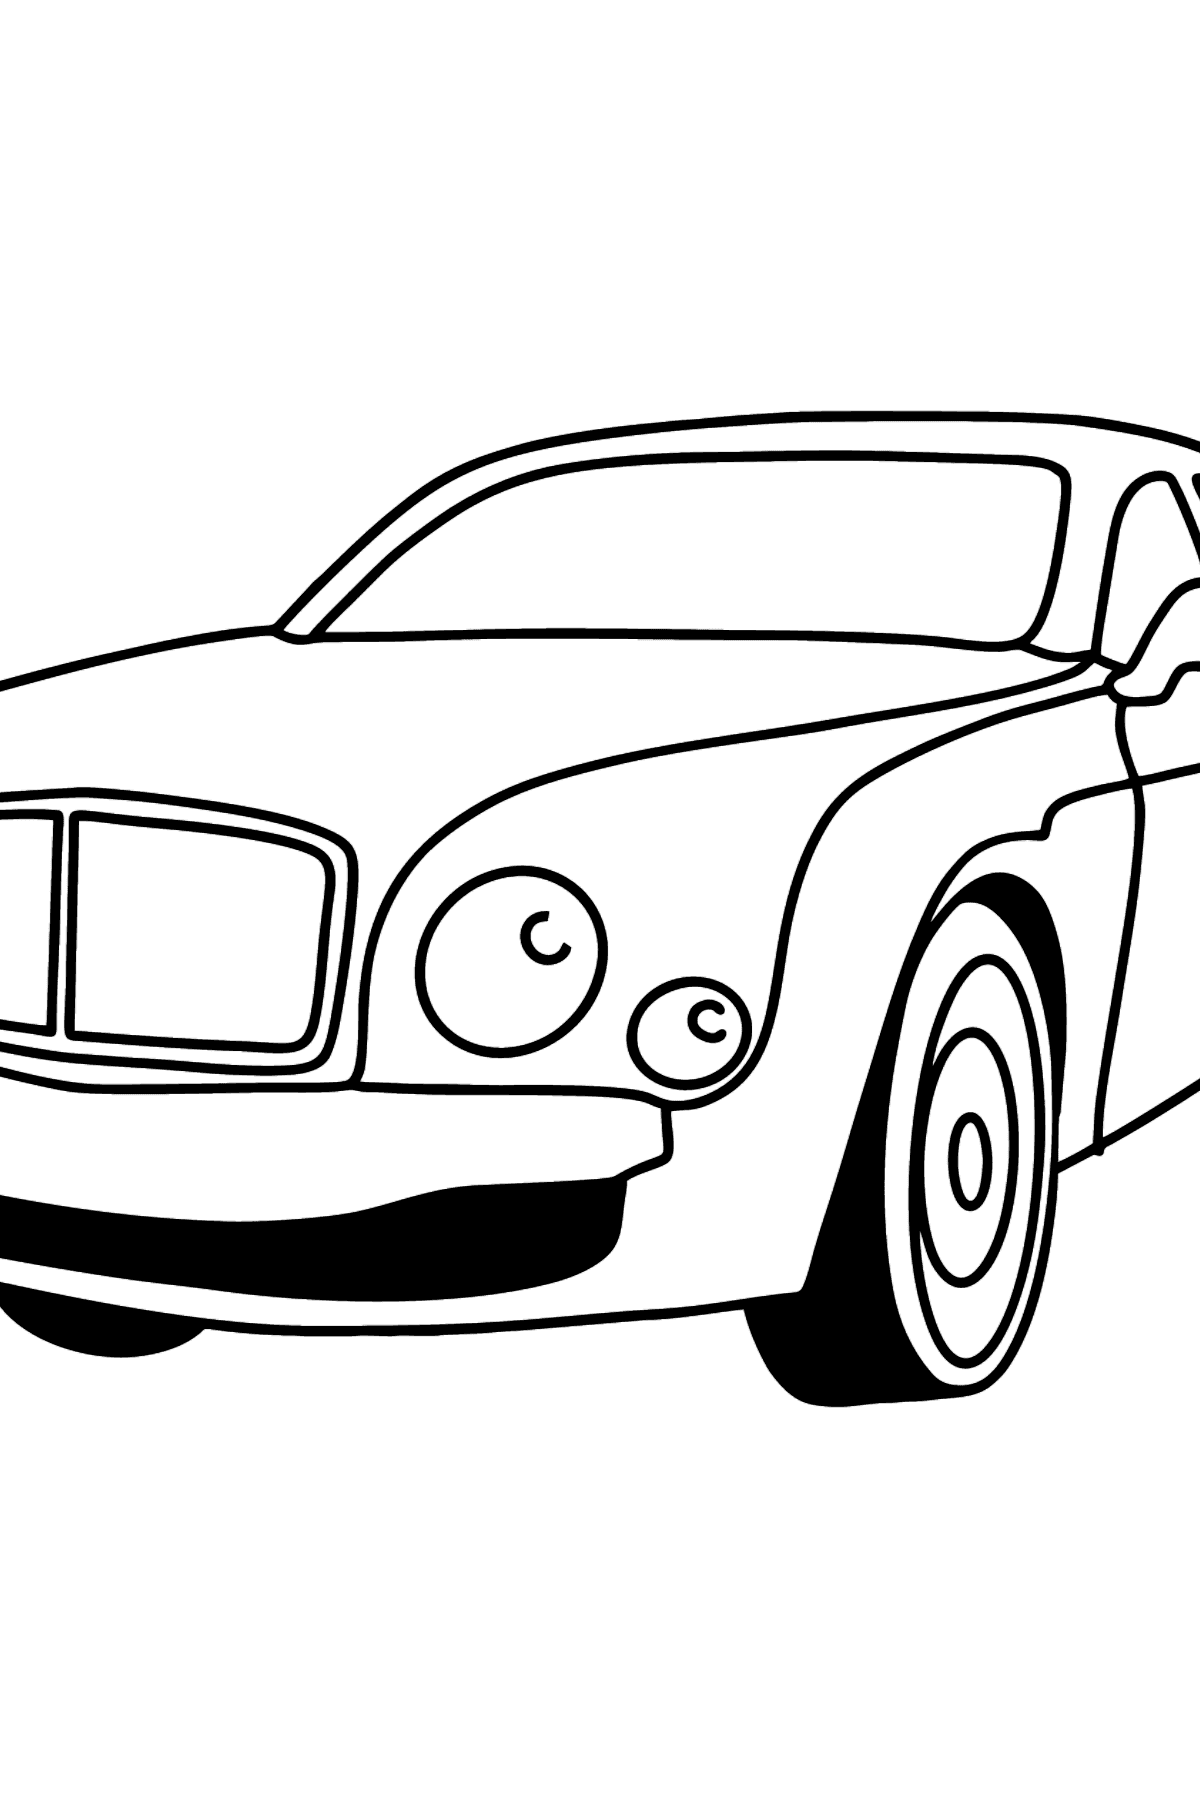 Tegning til fargelegging bil Bentley - Tegninger til fargelegging for barn